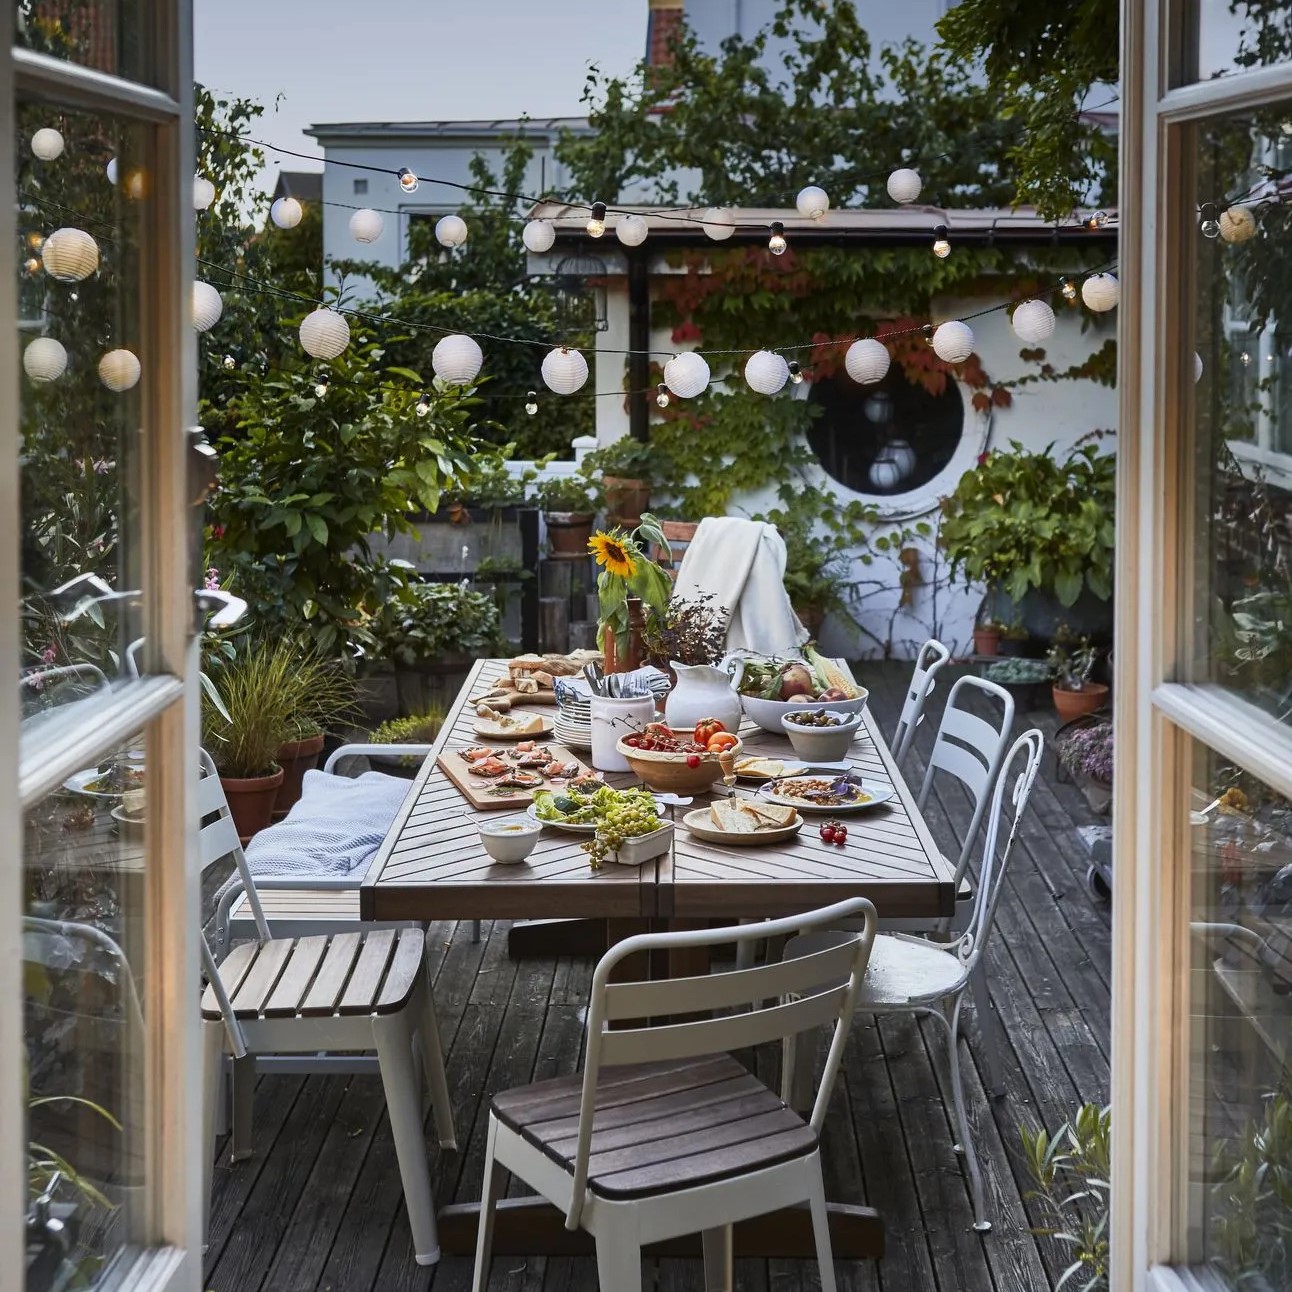 Terrasse en bois avec table en métal et guirlandes lumineuses